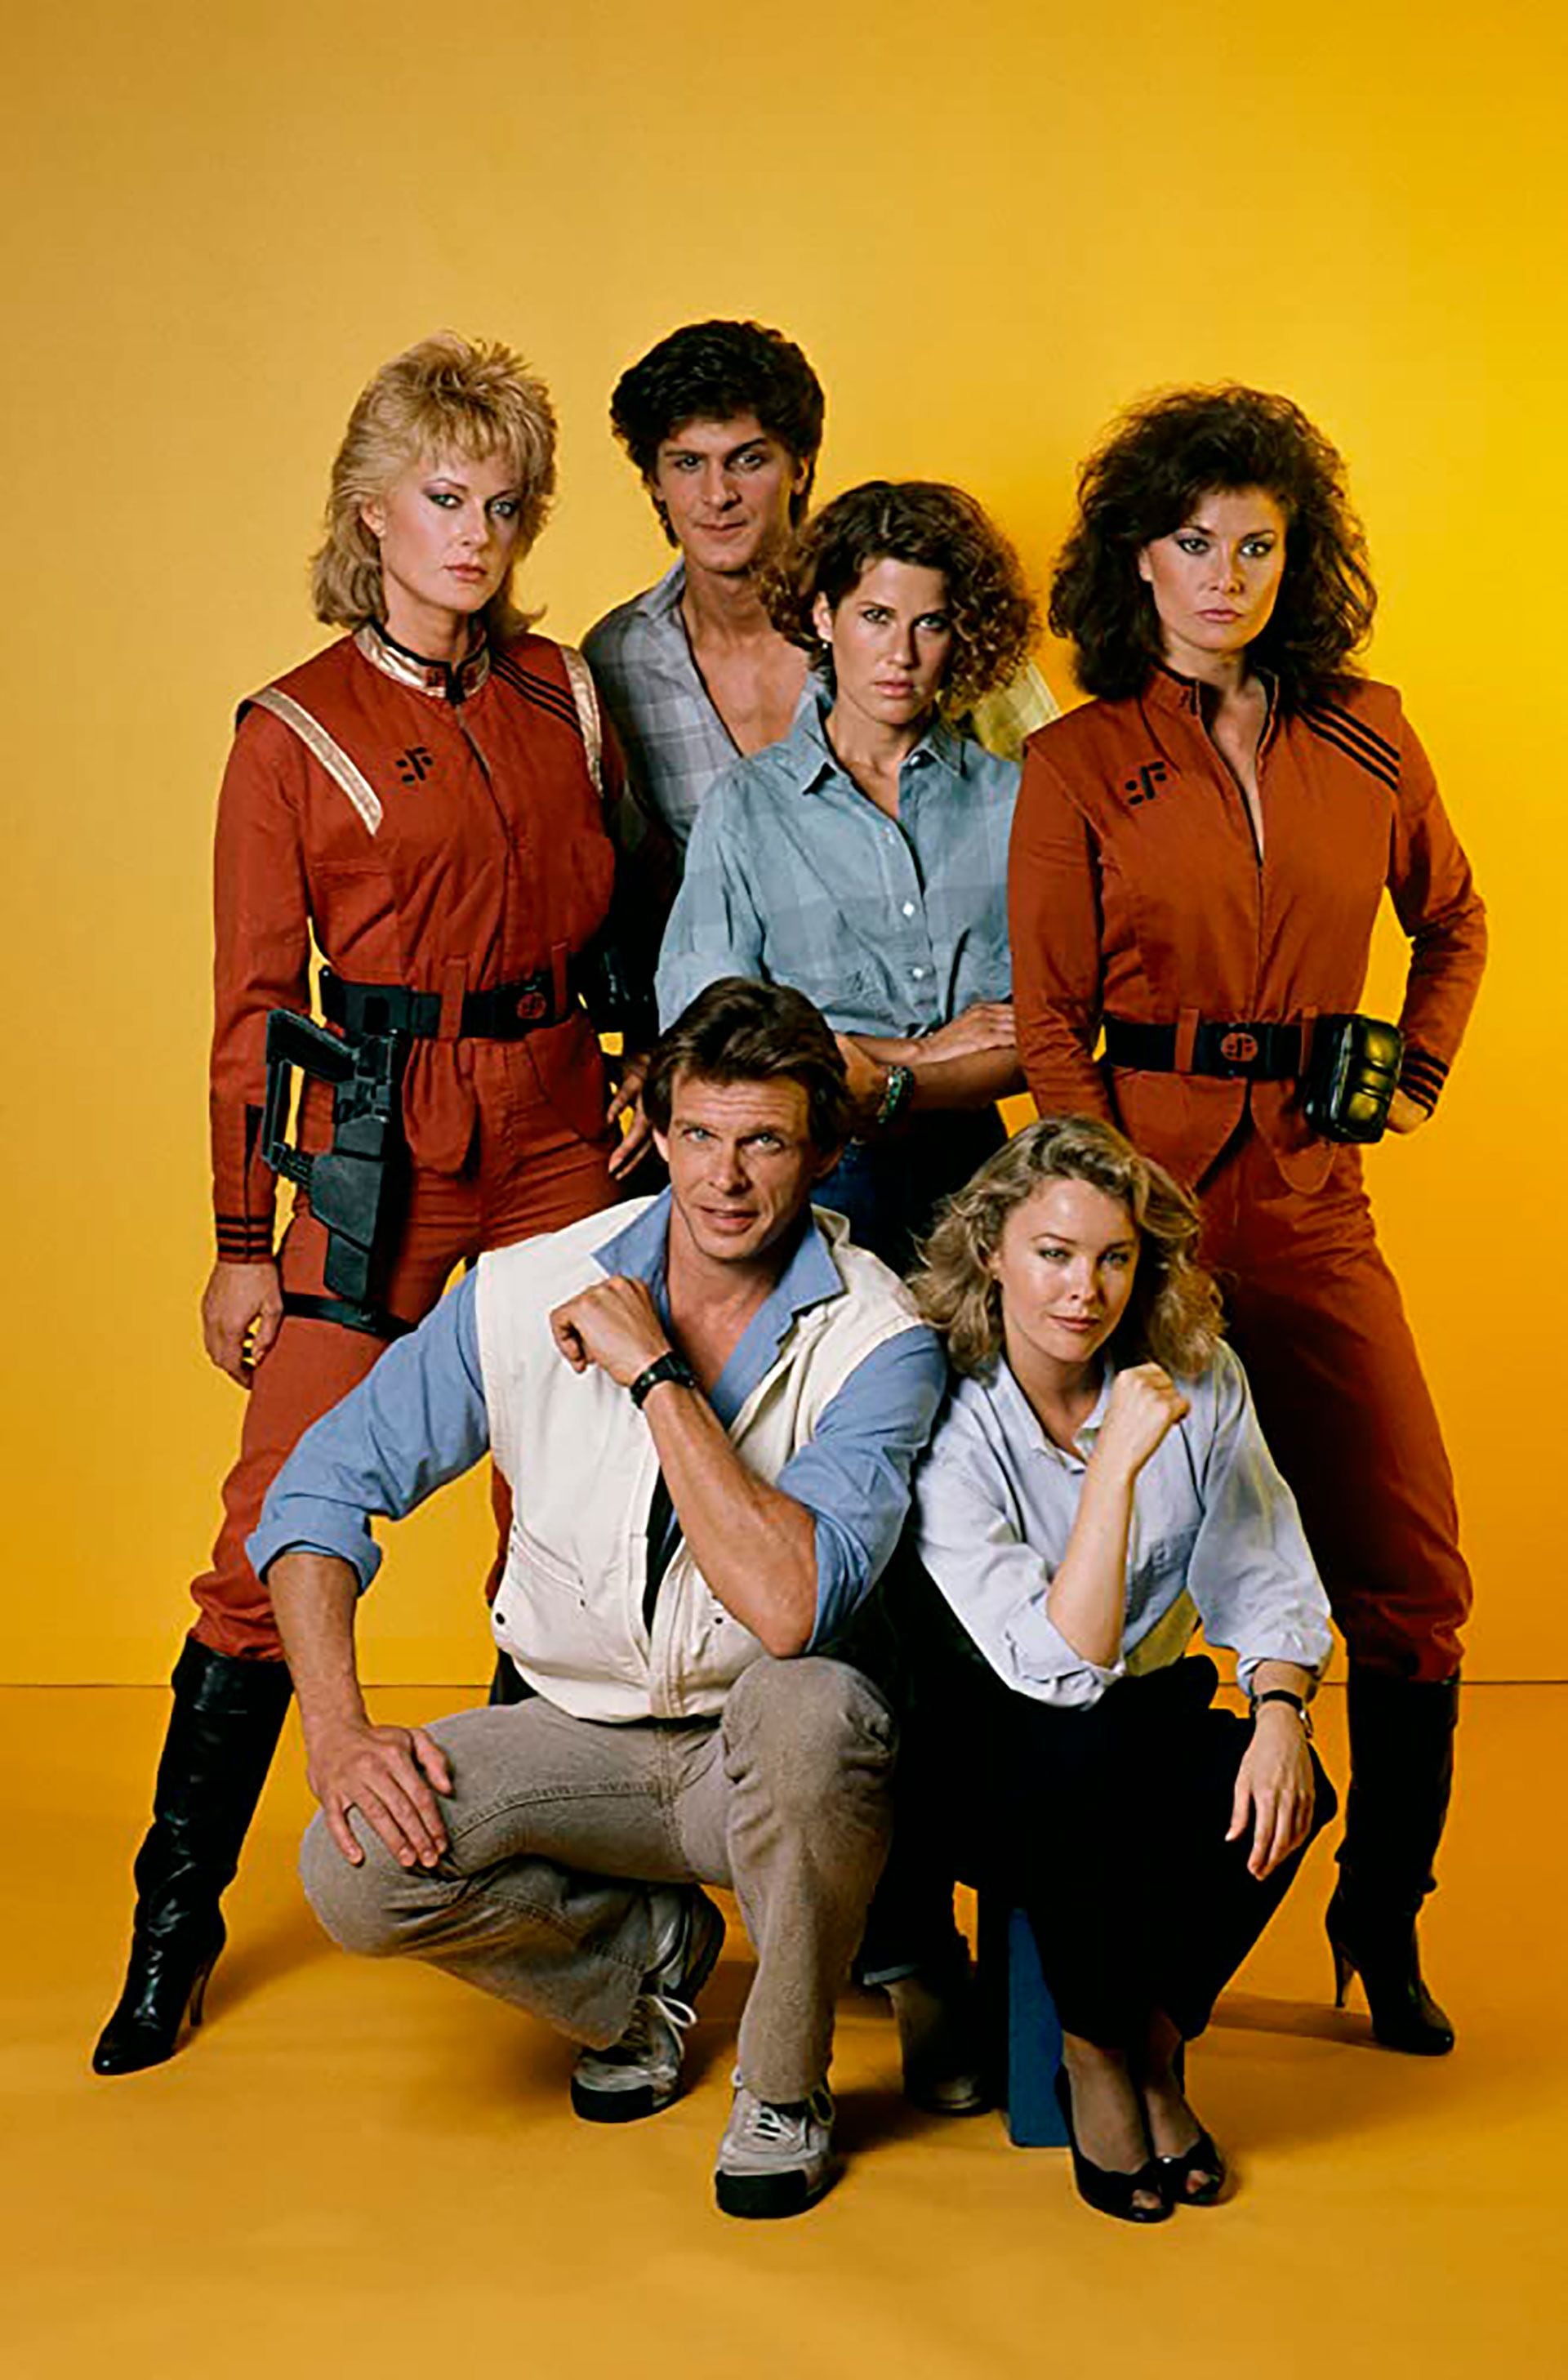 El afiche romocional del show en 1984